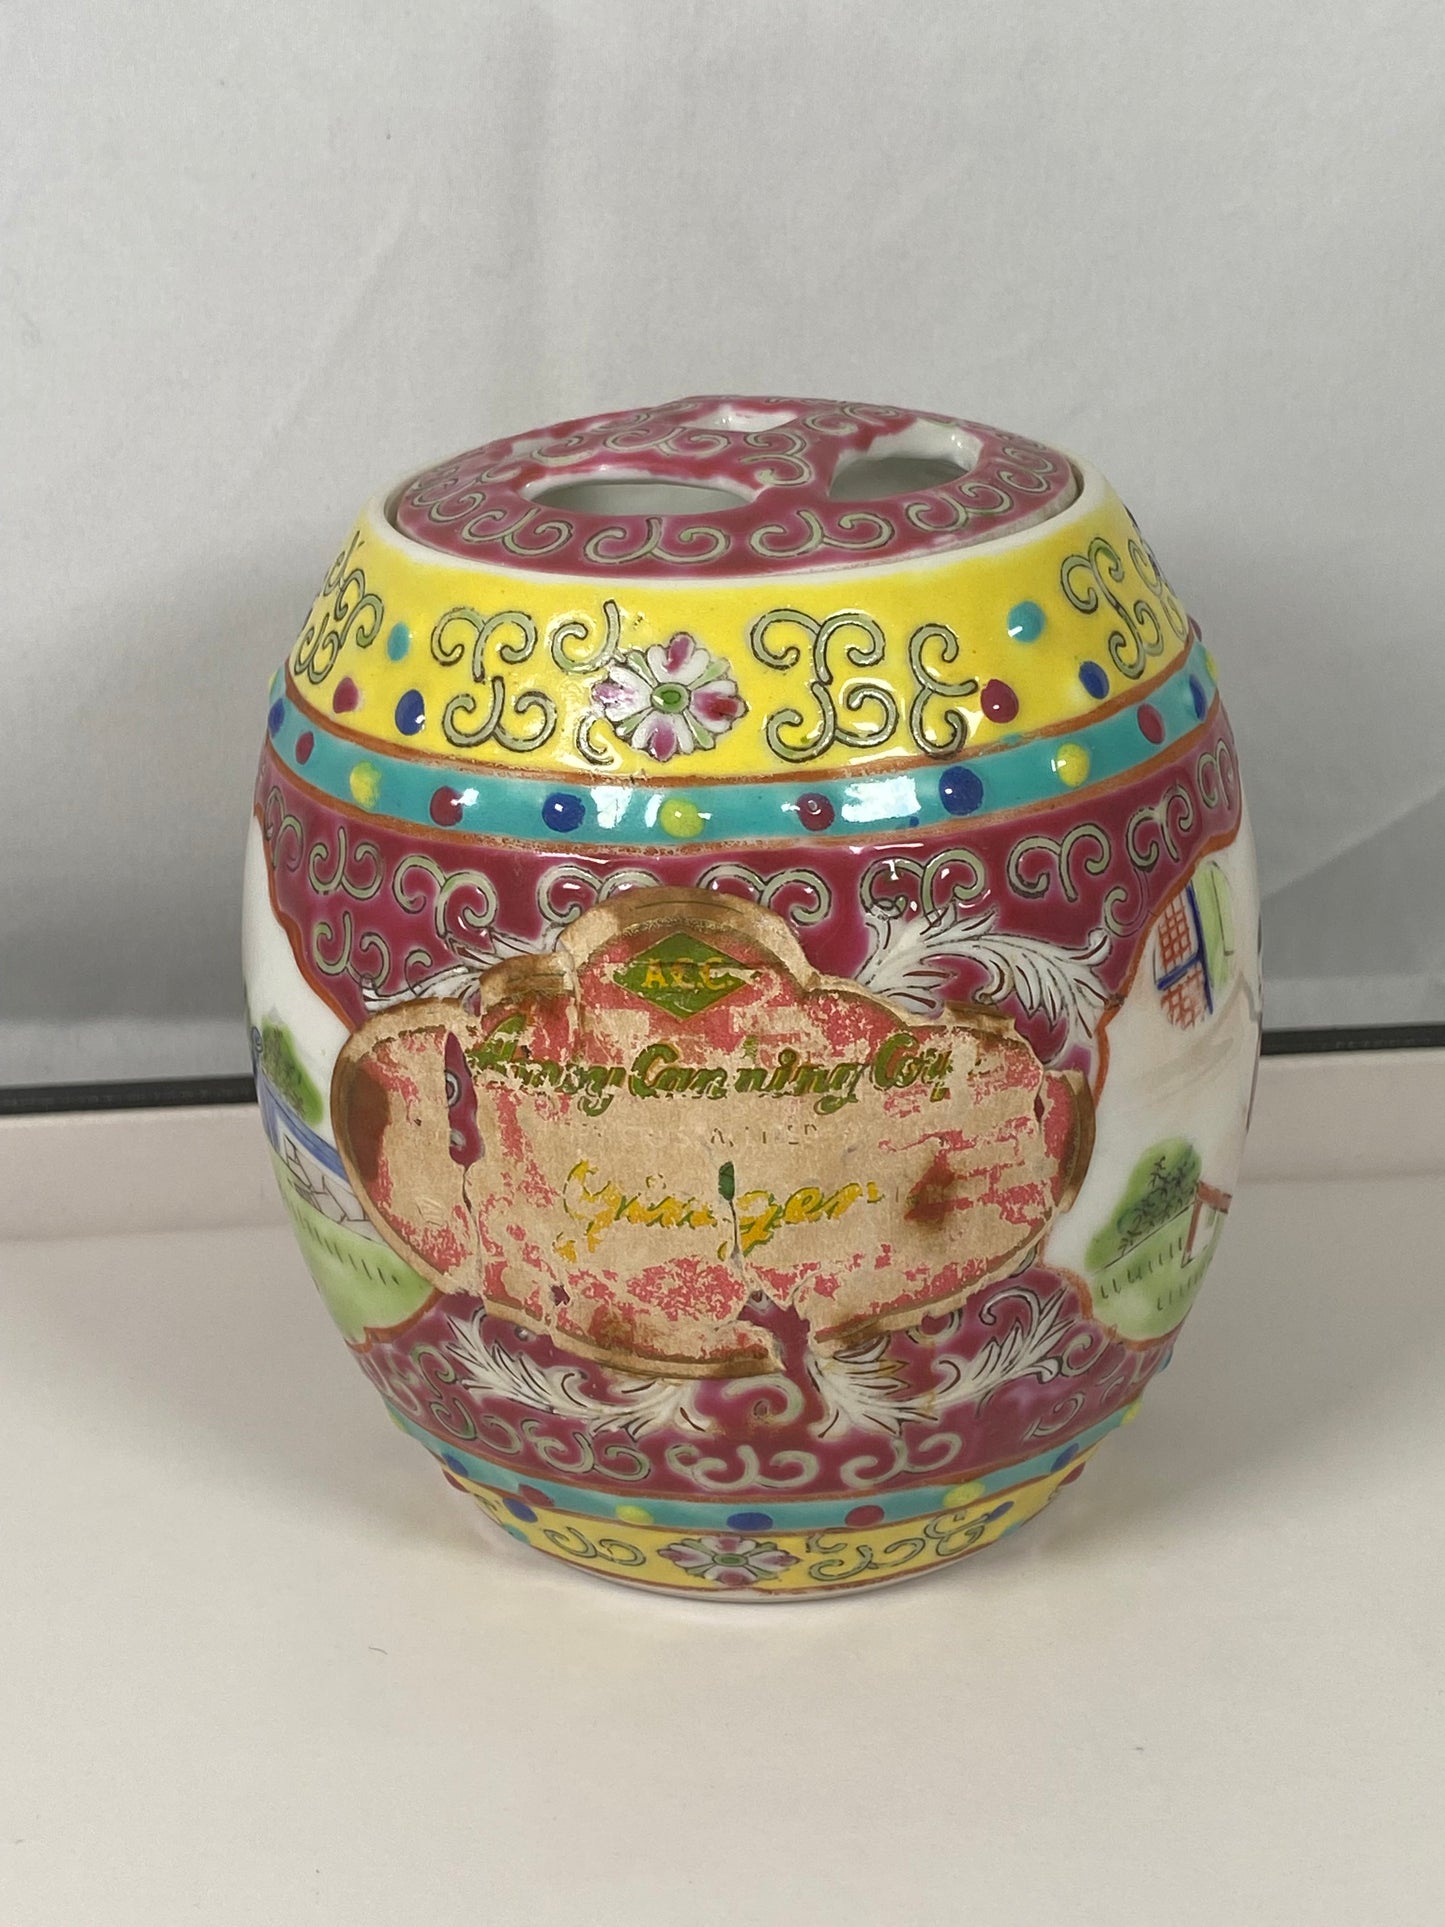 罕见的带章盖景德镇姜罐，厦门罐头公司，约 1940 年代末至 50 年代。